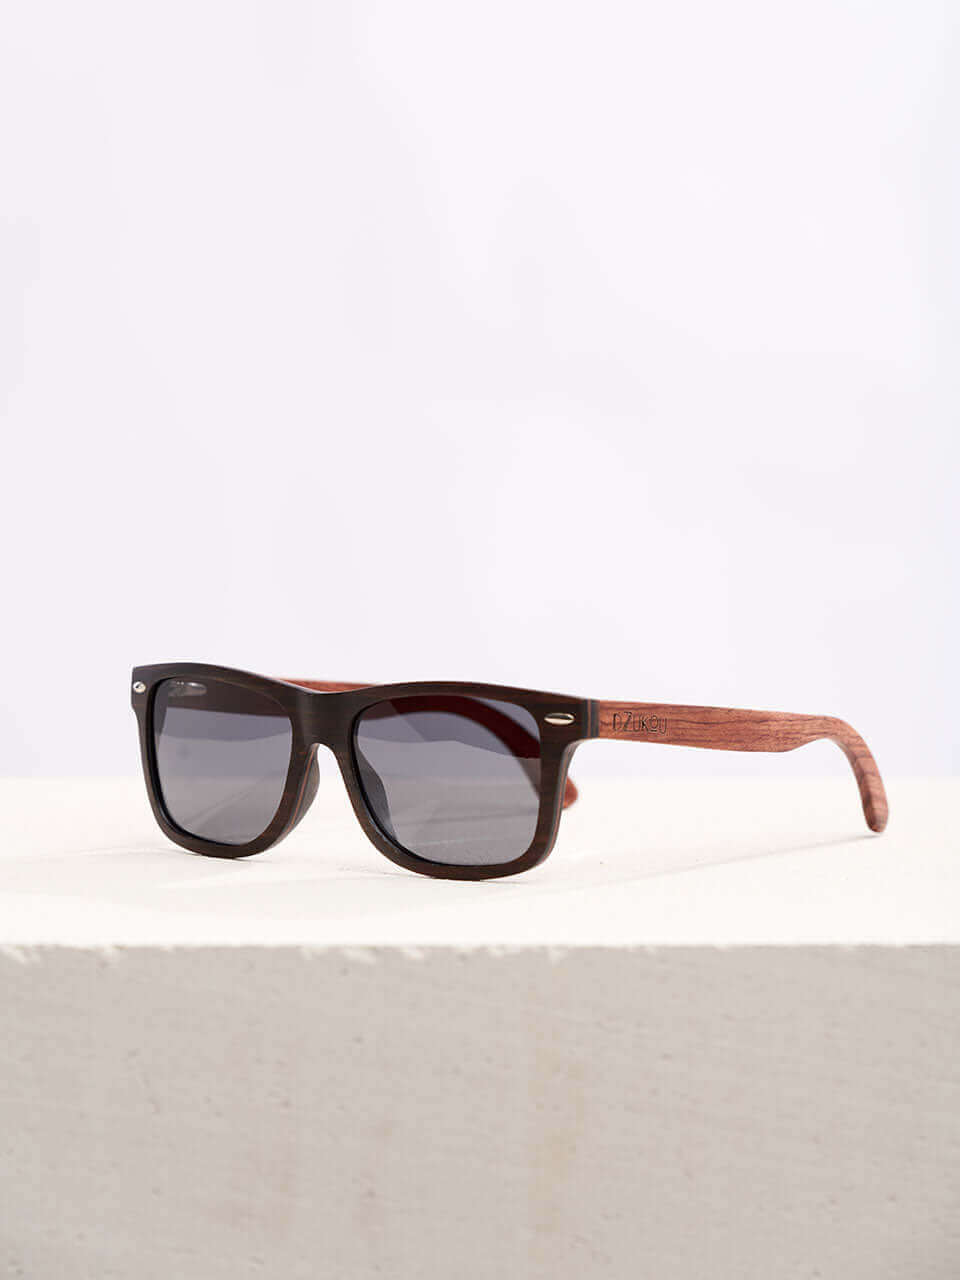 Reiek Peak - Wooden Sunglasses for Men